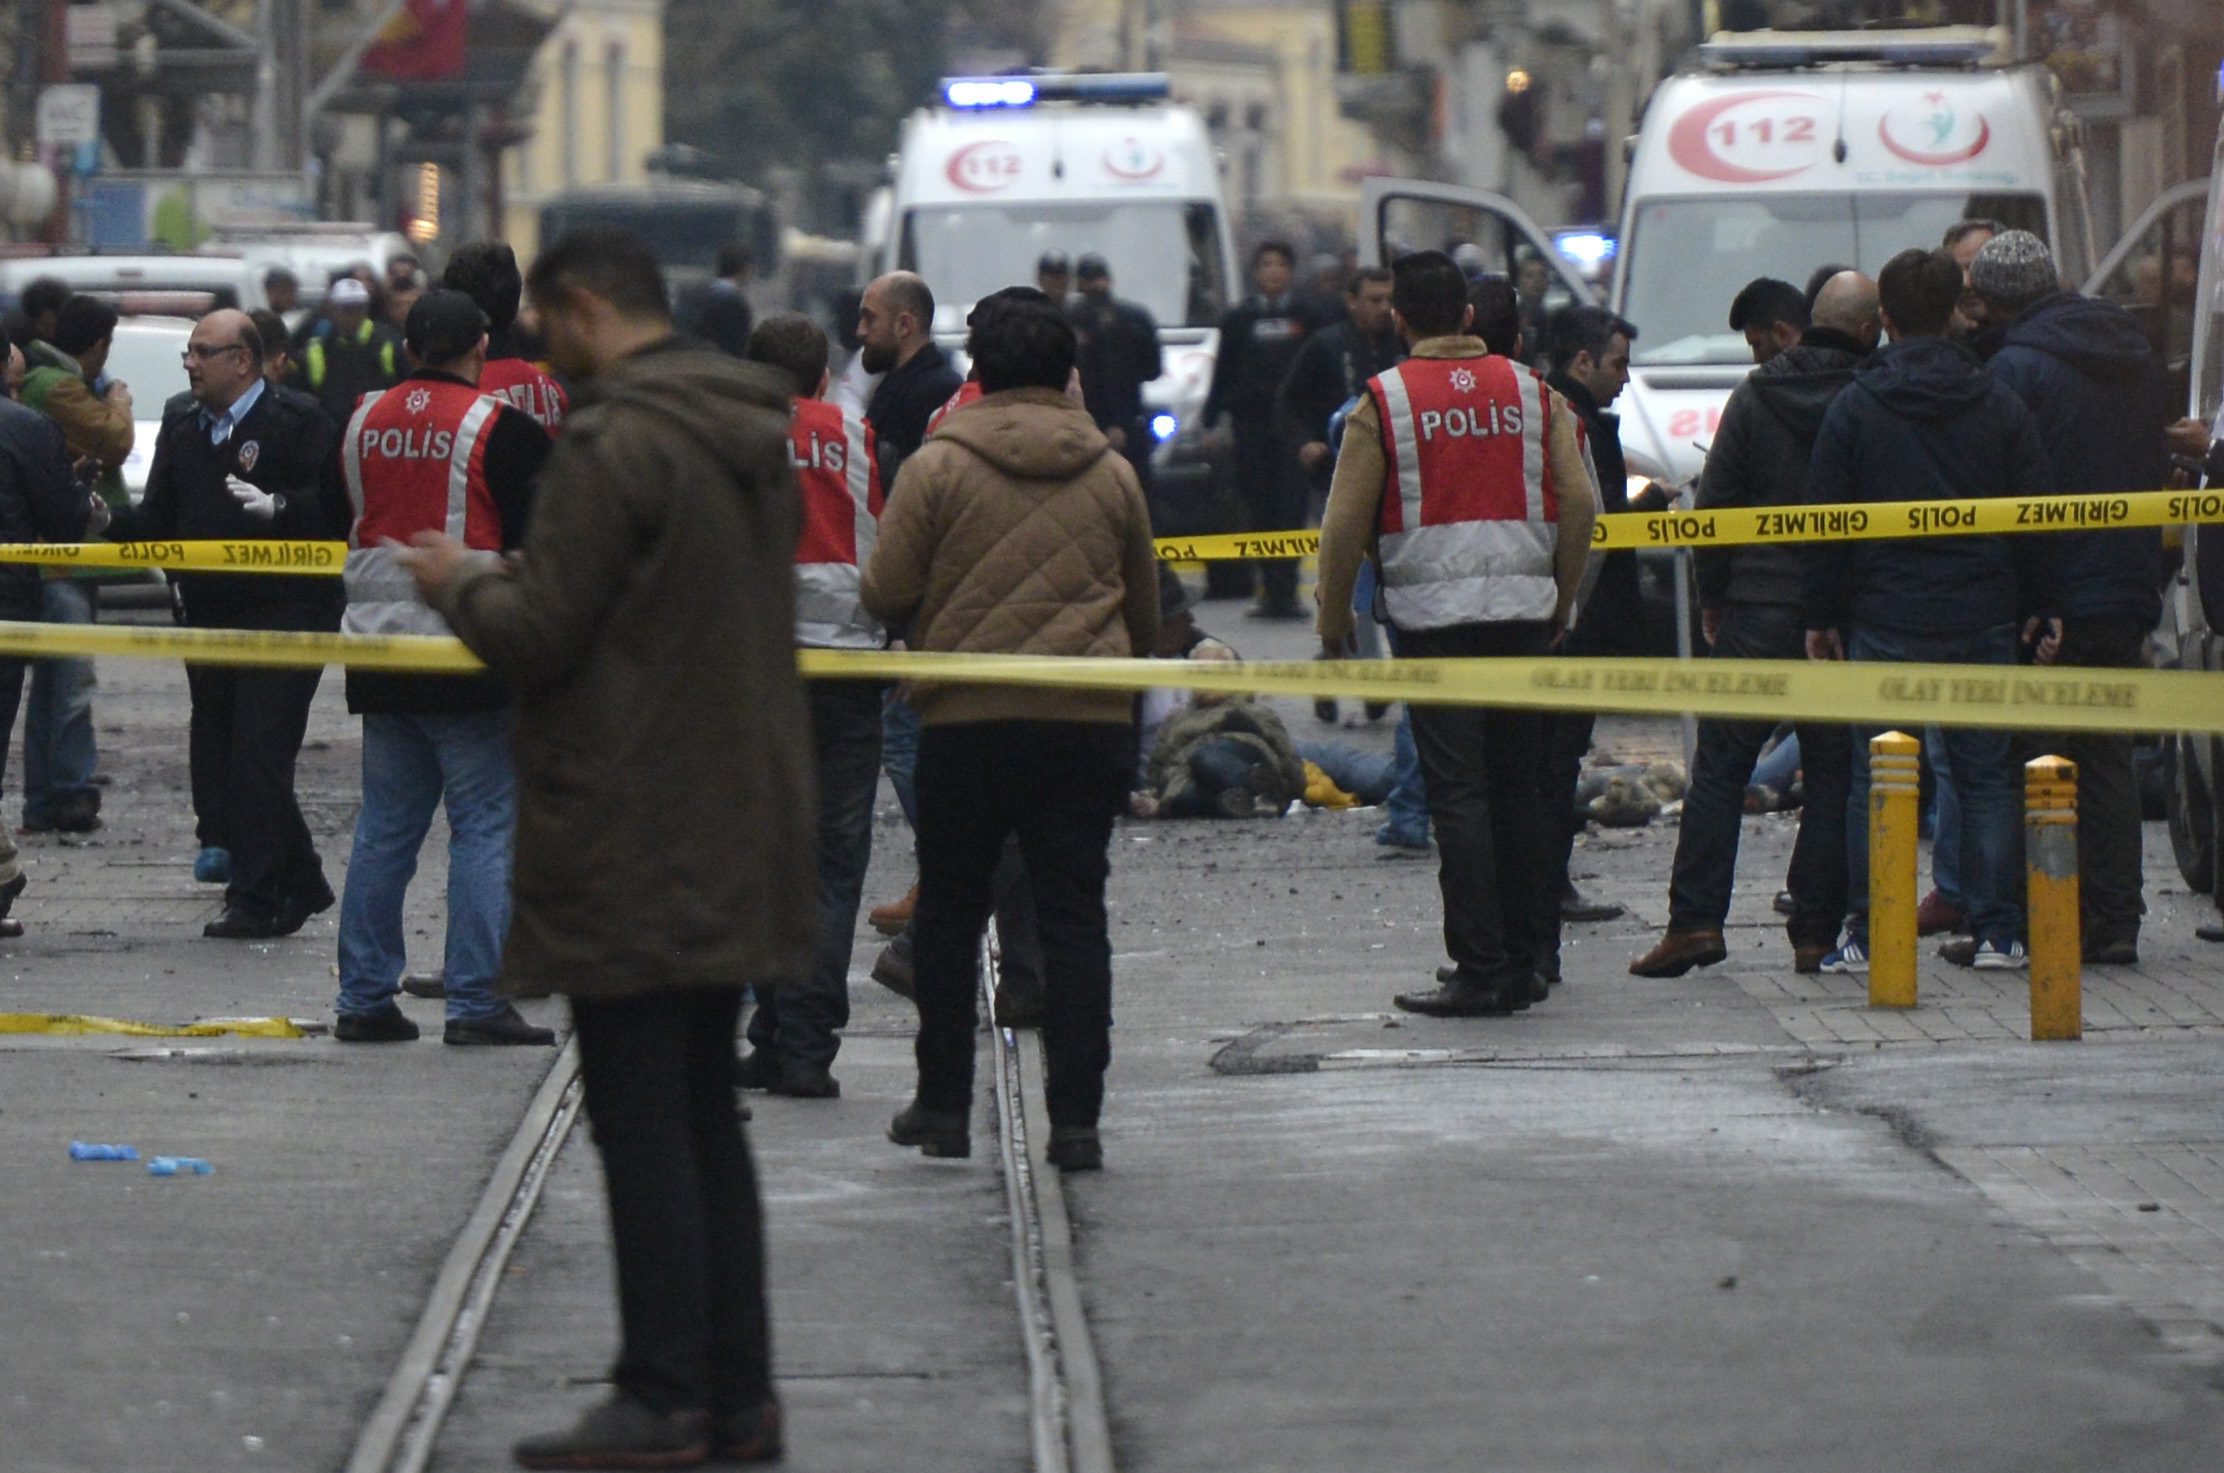 Взрив разтърси днес главната пешеходна търговска улица в европейската част на Истанбул. АФП, позовавайки се на турски информационни канали, съобщава, че става дума за самоубийствен терористичен акт. Четирима души са жертвите (единият от тях е камикадзето), а 36 бяха ранени, седем от които тежко, съобщи турският министър на здравеопазването Мехмет Мюеззиноглу. Той посочи, че 12 от ранените са чужденци